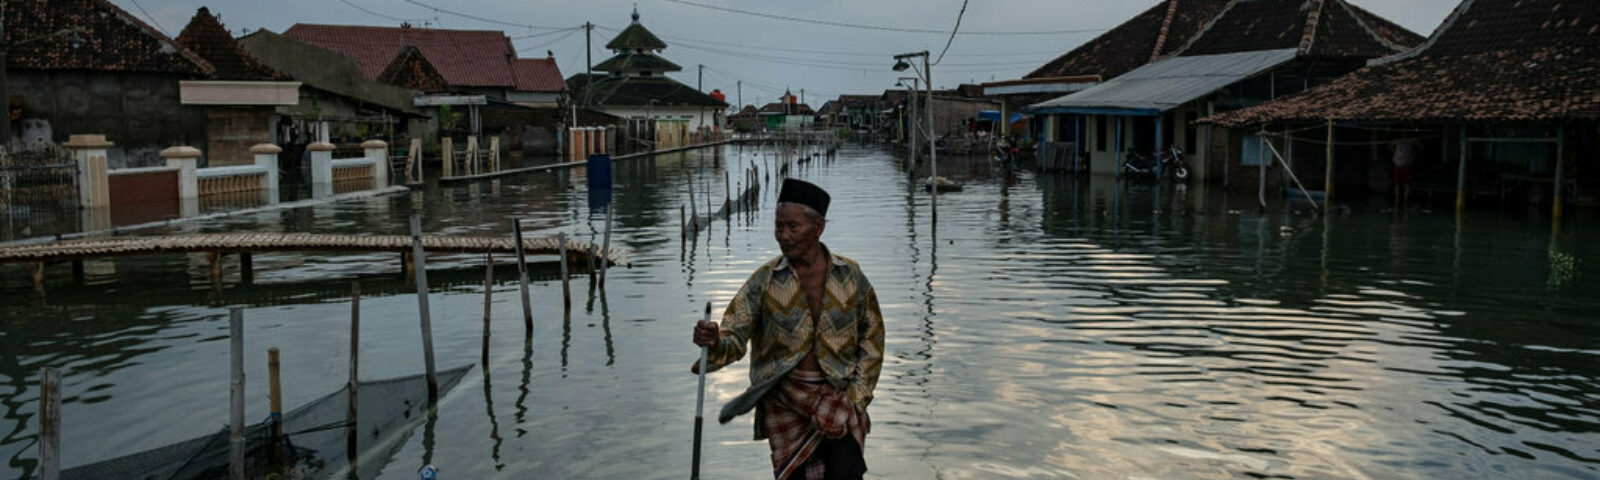 Eldre mann går gjennom oversvømt gate etter flom i Indonesia.